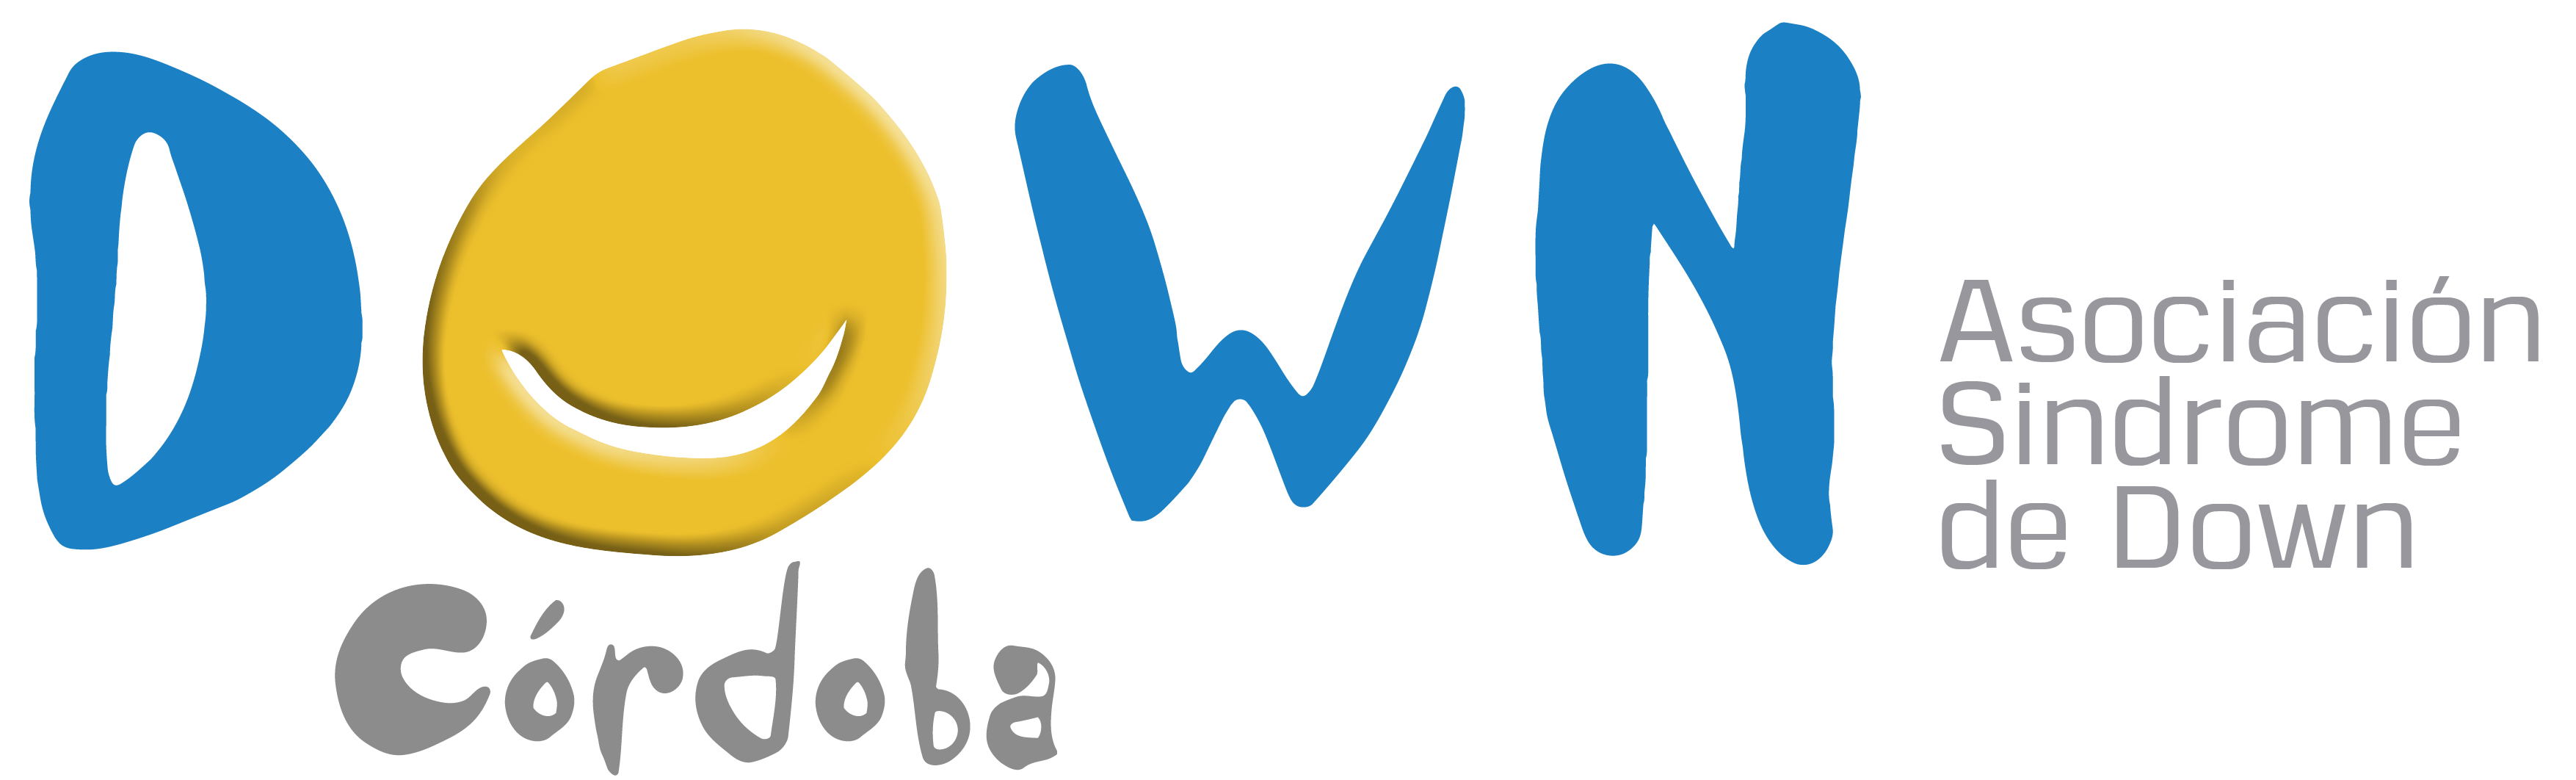 logo-down-cordoba